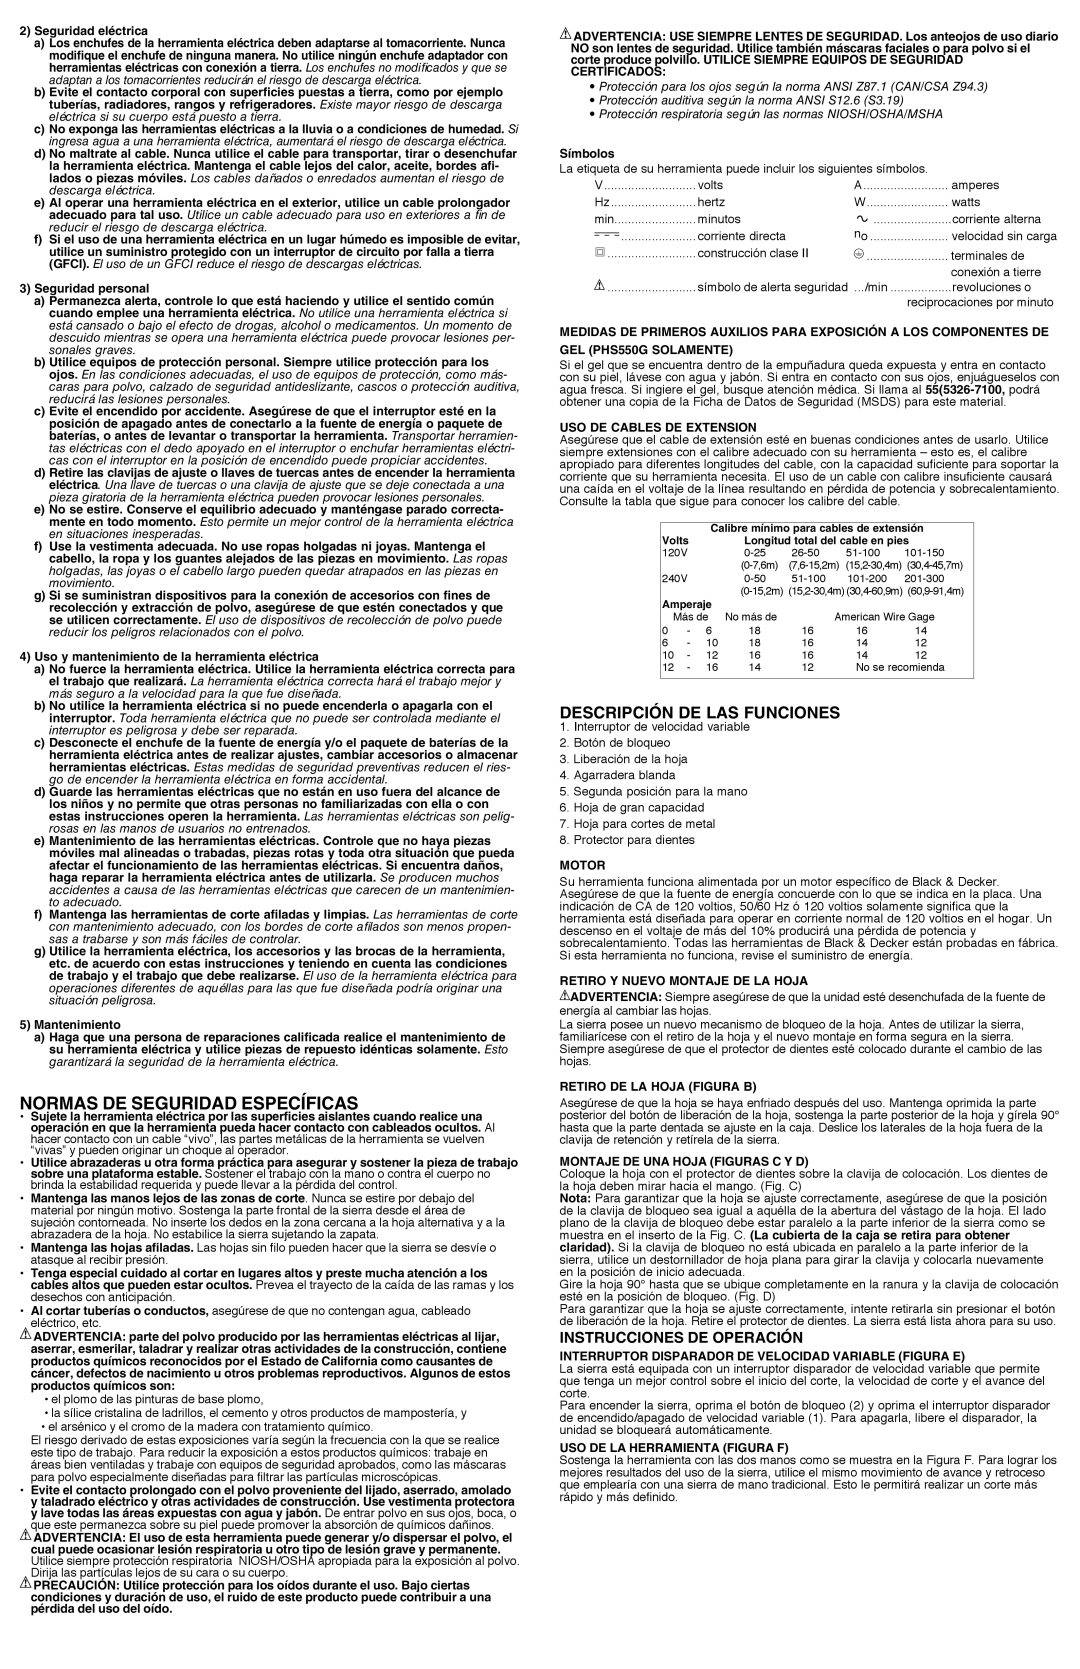 Black & Decker PHS550B Normas de seguridad específicas, Descripción De Las Funciones, Instrucciones de operación 